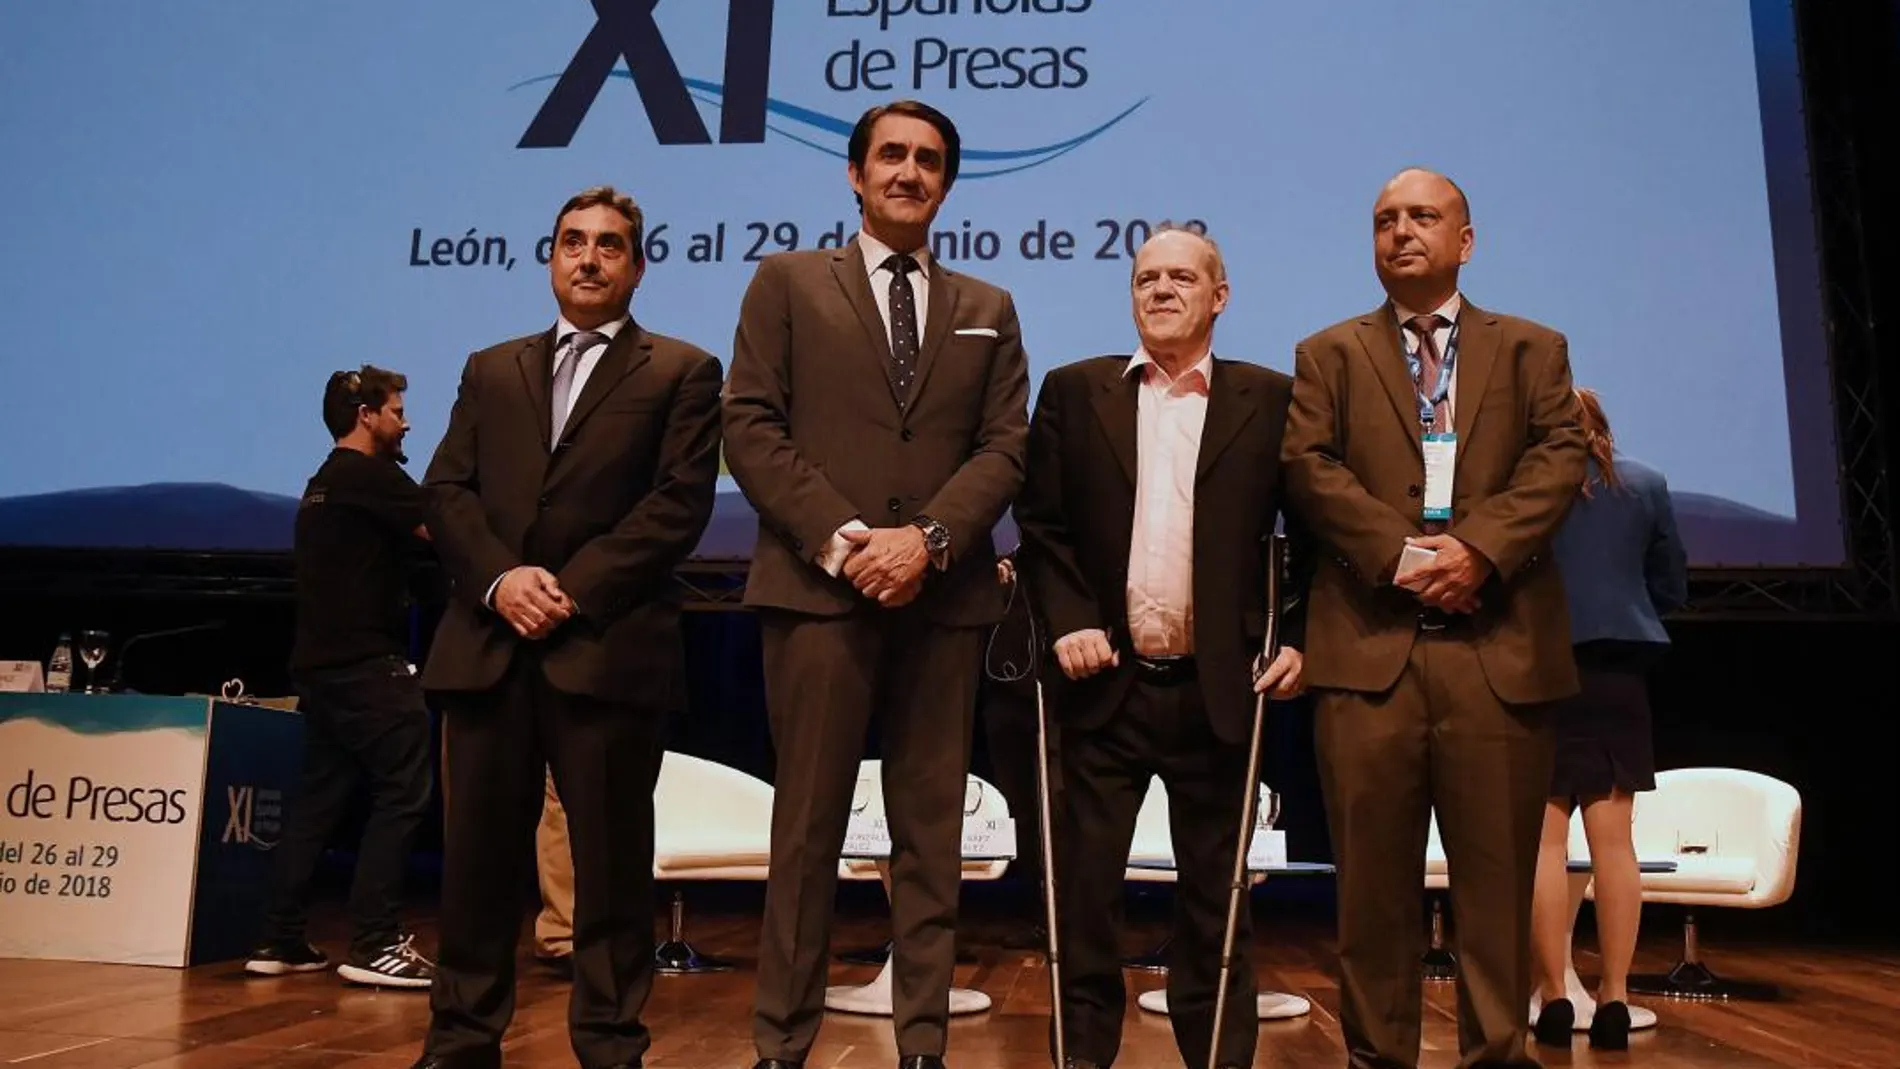 El consejero de Fomento y Medio Ambiente, Juan Carlos Suárez Quiñones, participa en la clausura de las XI Jornadas Españolas de Presas